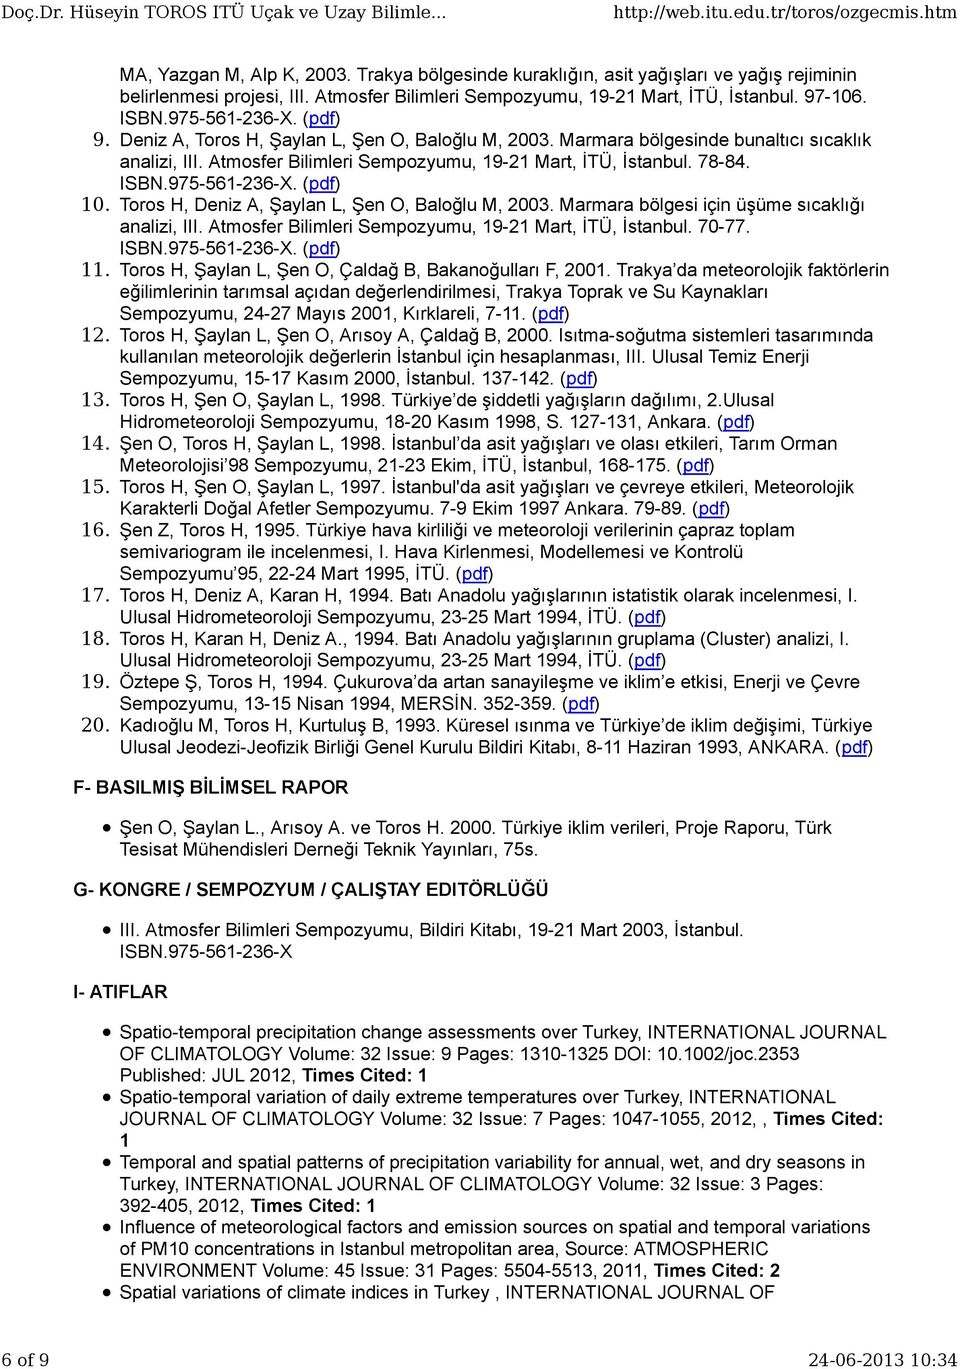 975-561-236-X. (pdf) 10. Toros H, Deniz A, Şaylan L, Şen O, Baloğlu M, 2003. Marmara bölgesi için üşüme sıcaklığı analizi, III. Atmosfer Bilimleri Sempozyumu, 19-21 Mart, İTÜ, İstanbul. 70-77. ISBN.